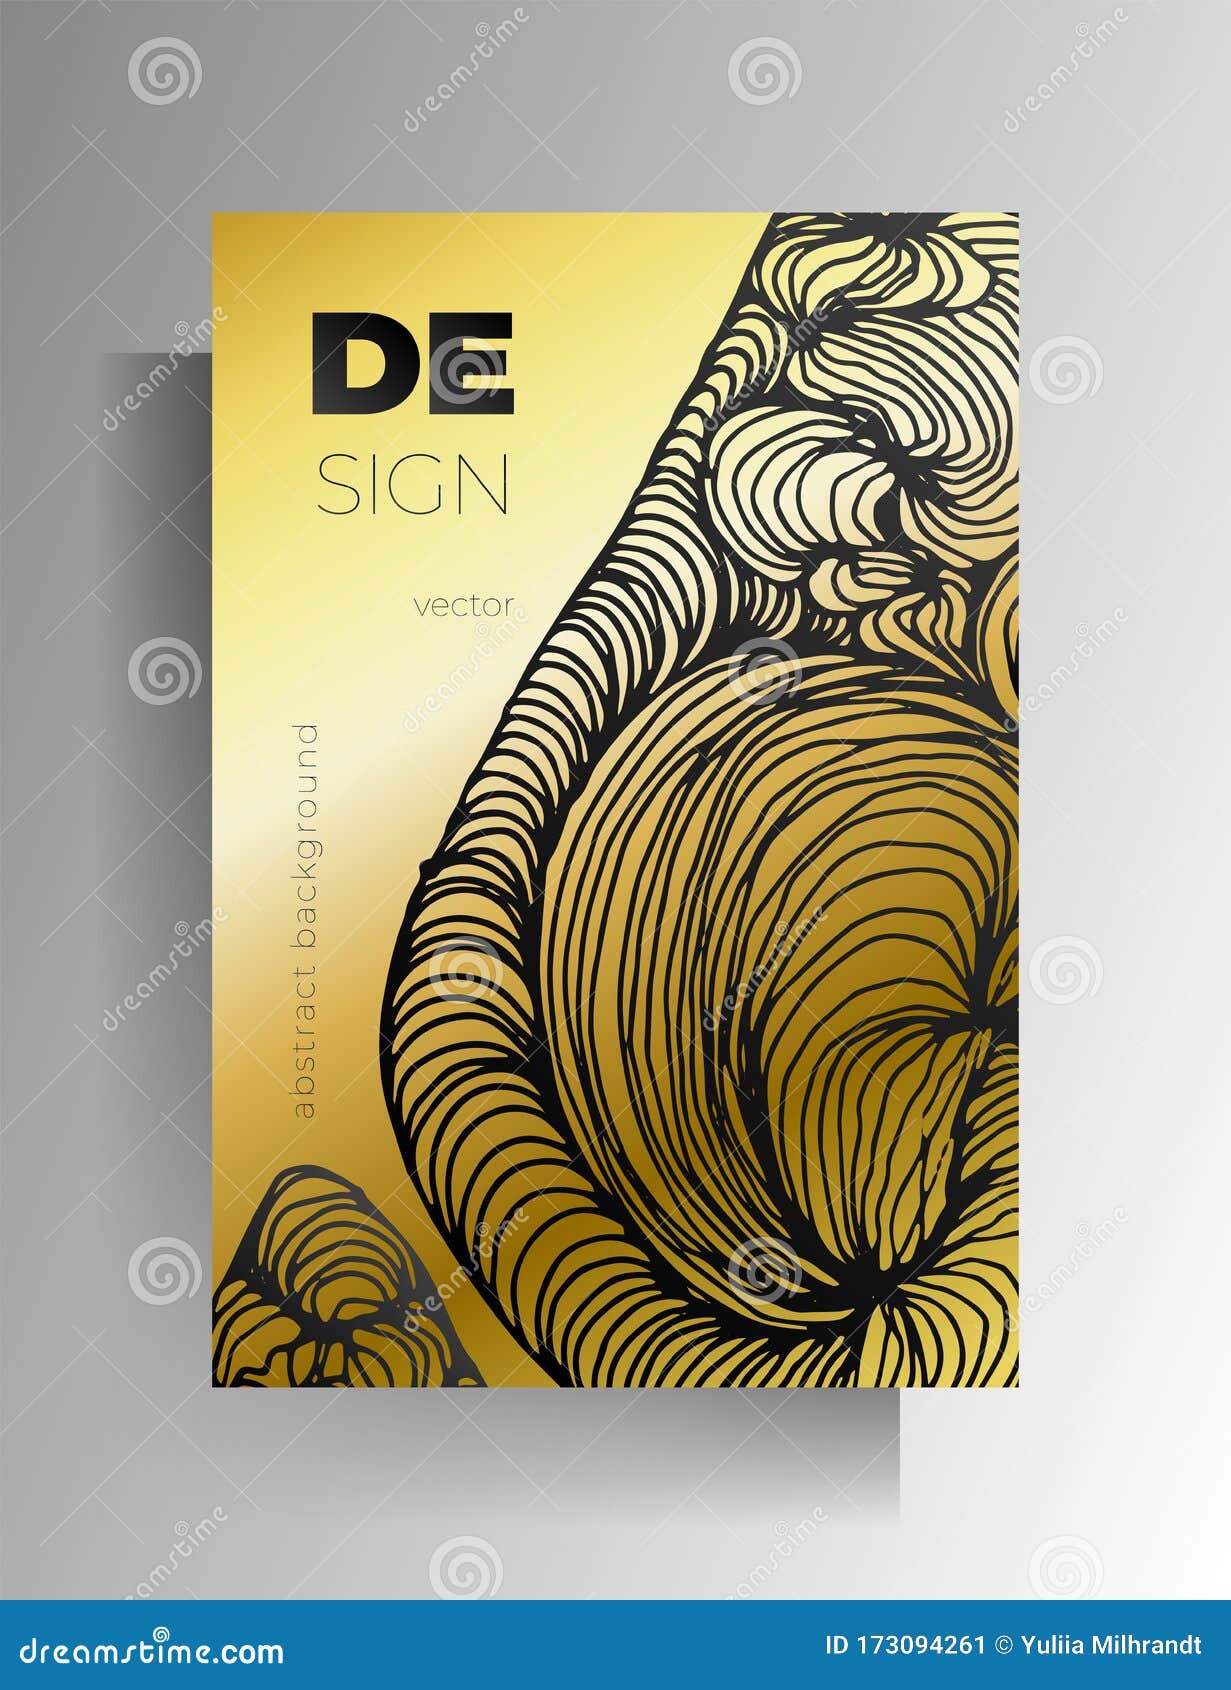 Diseño Para Afiches, Portada Para Libros, Revista Concepto De Oro Y Negro  Stock de ilustración - Ilustración de elegante, elemento: 173094261